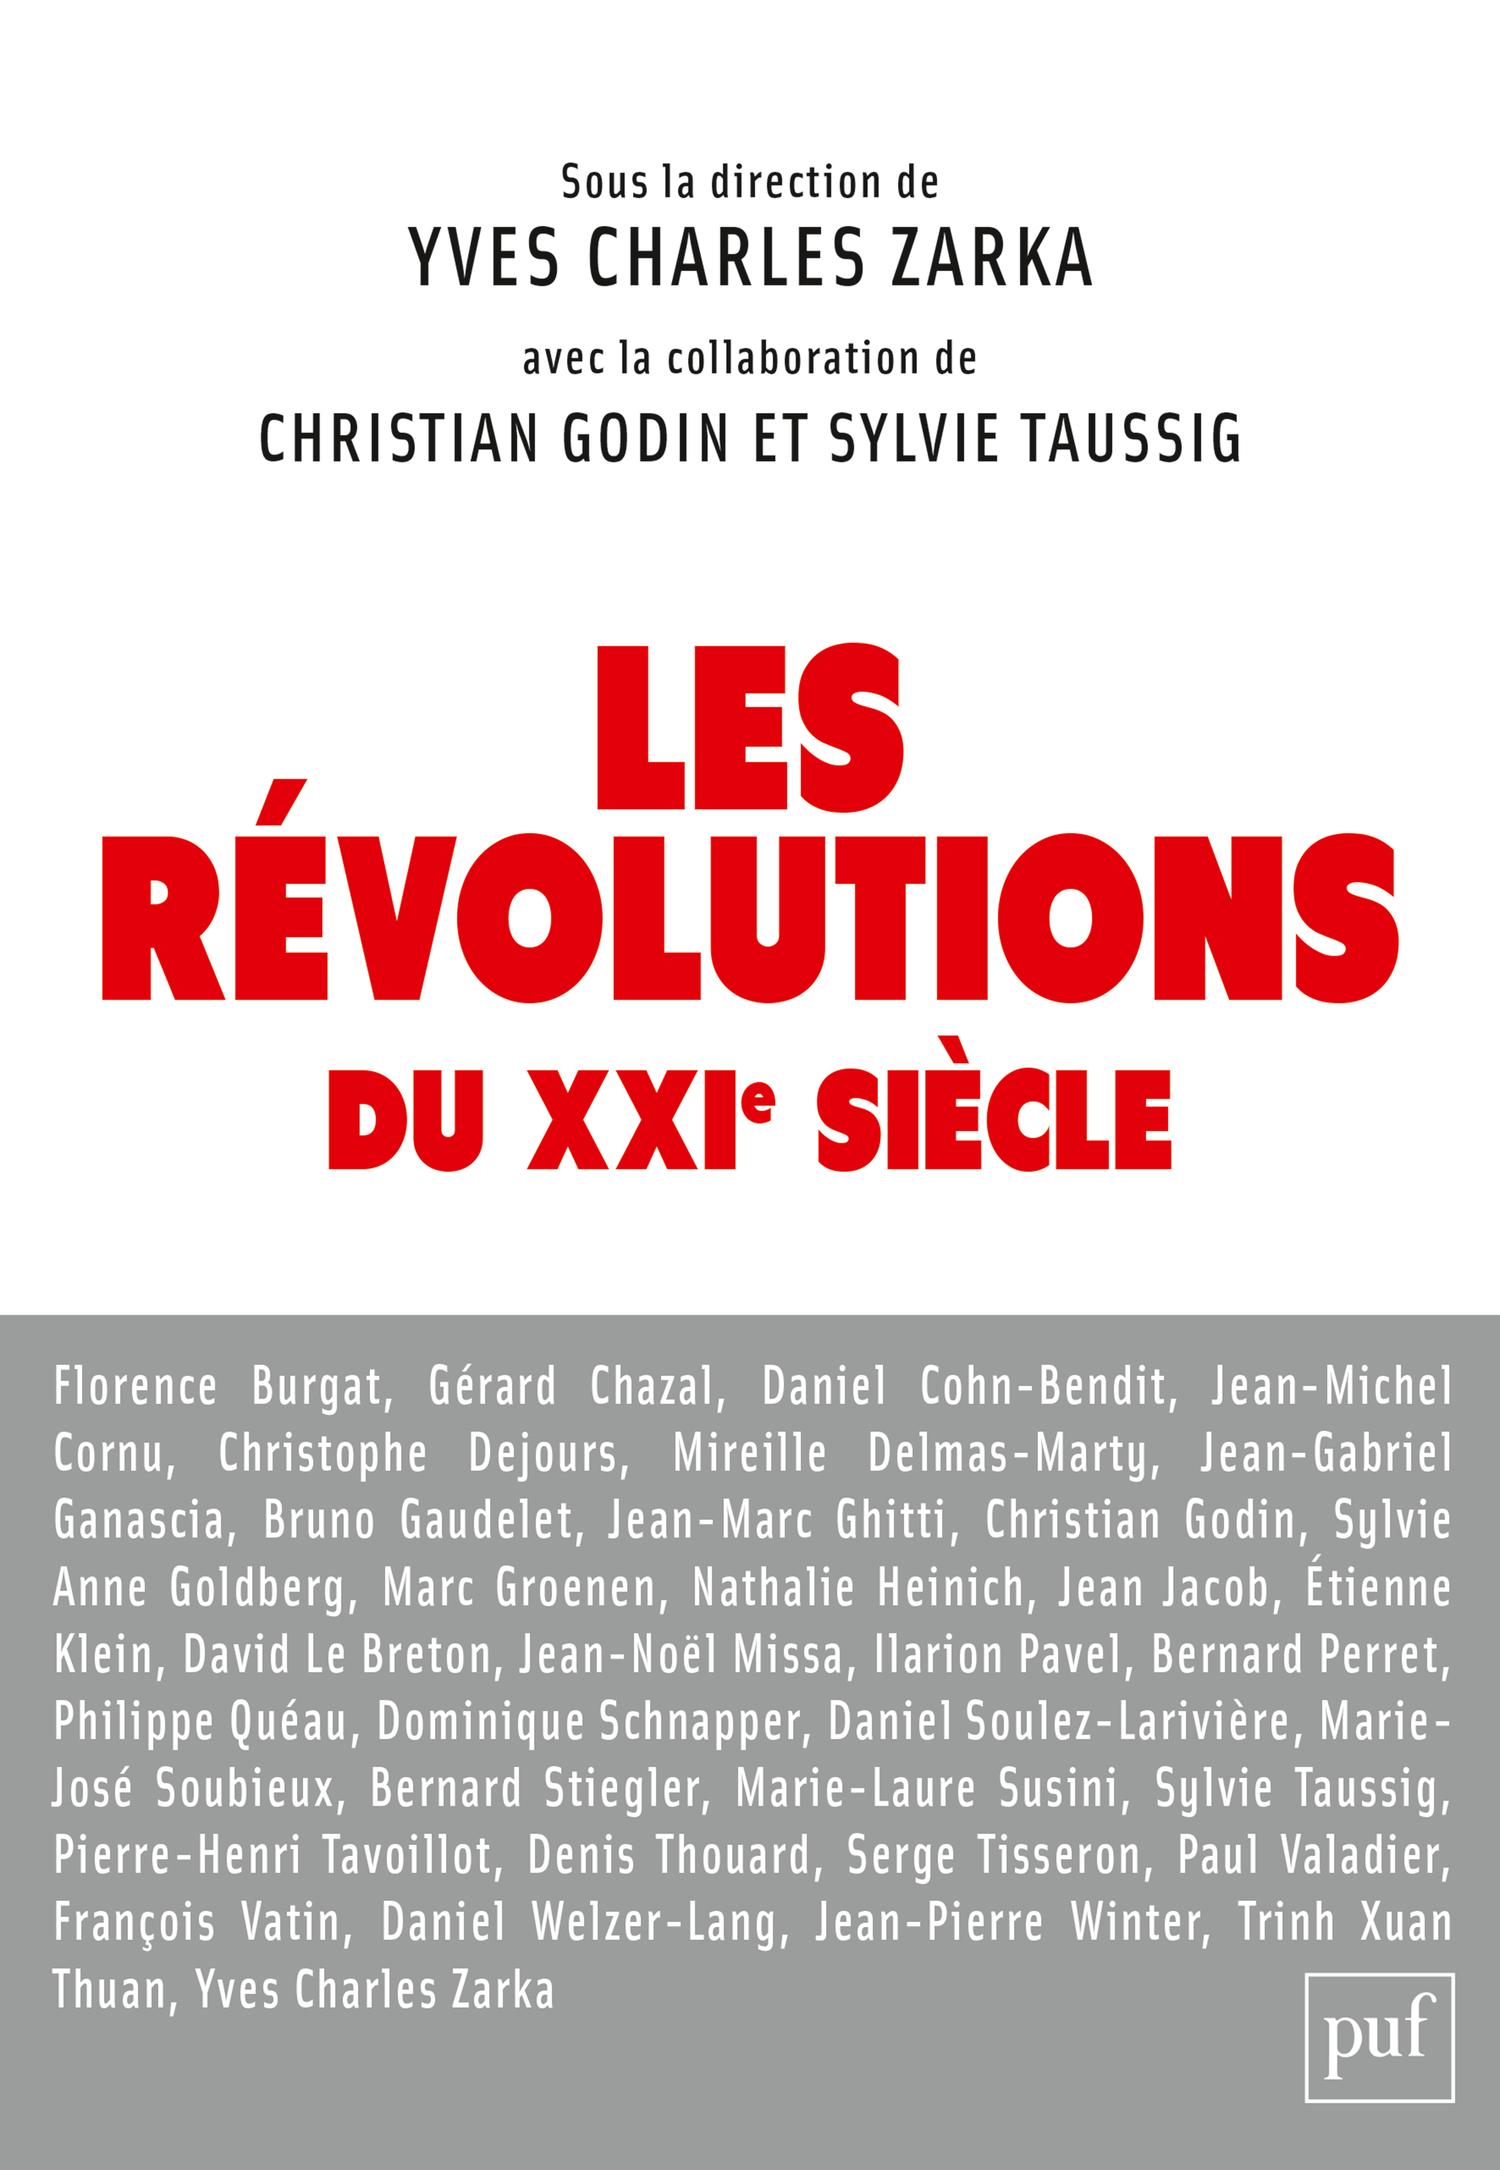 Les révolutions du XXIe siècle De Yves Charles Zarka, Sylvie Taussig et Christian Godin - Presses Universitaires de France